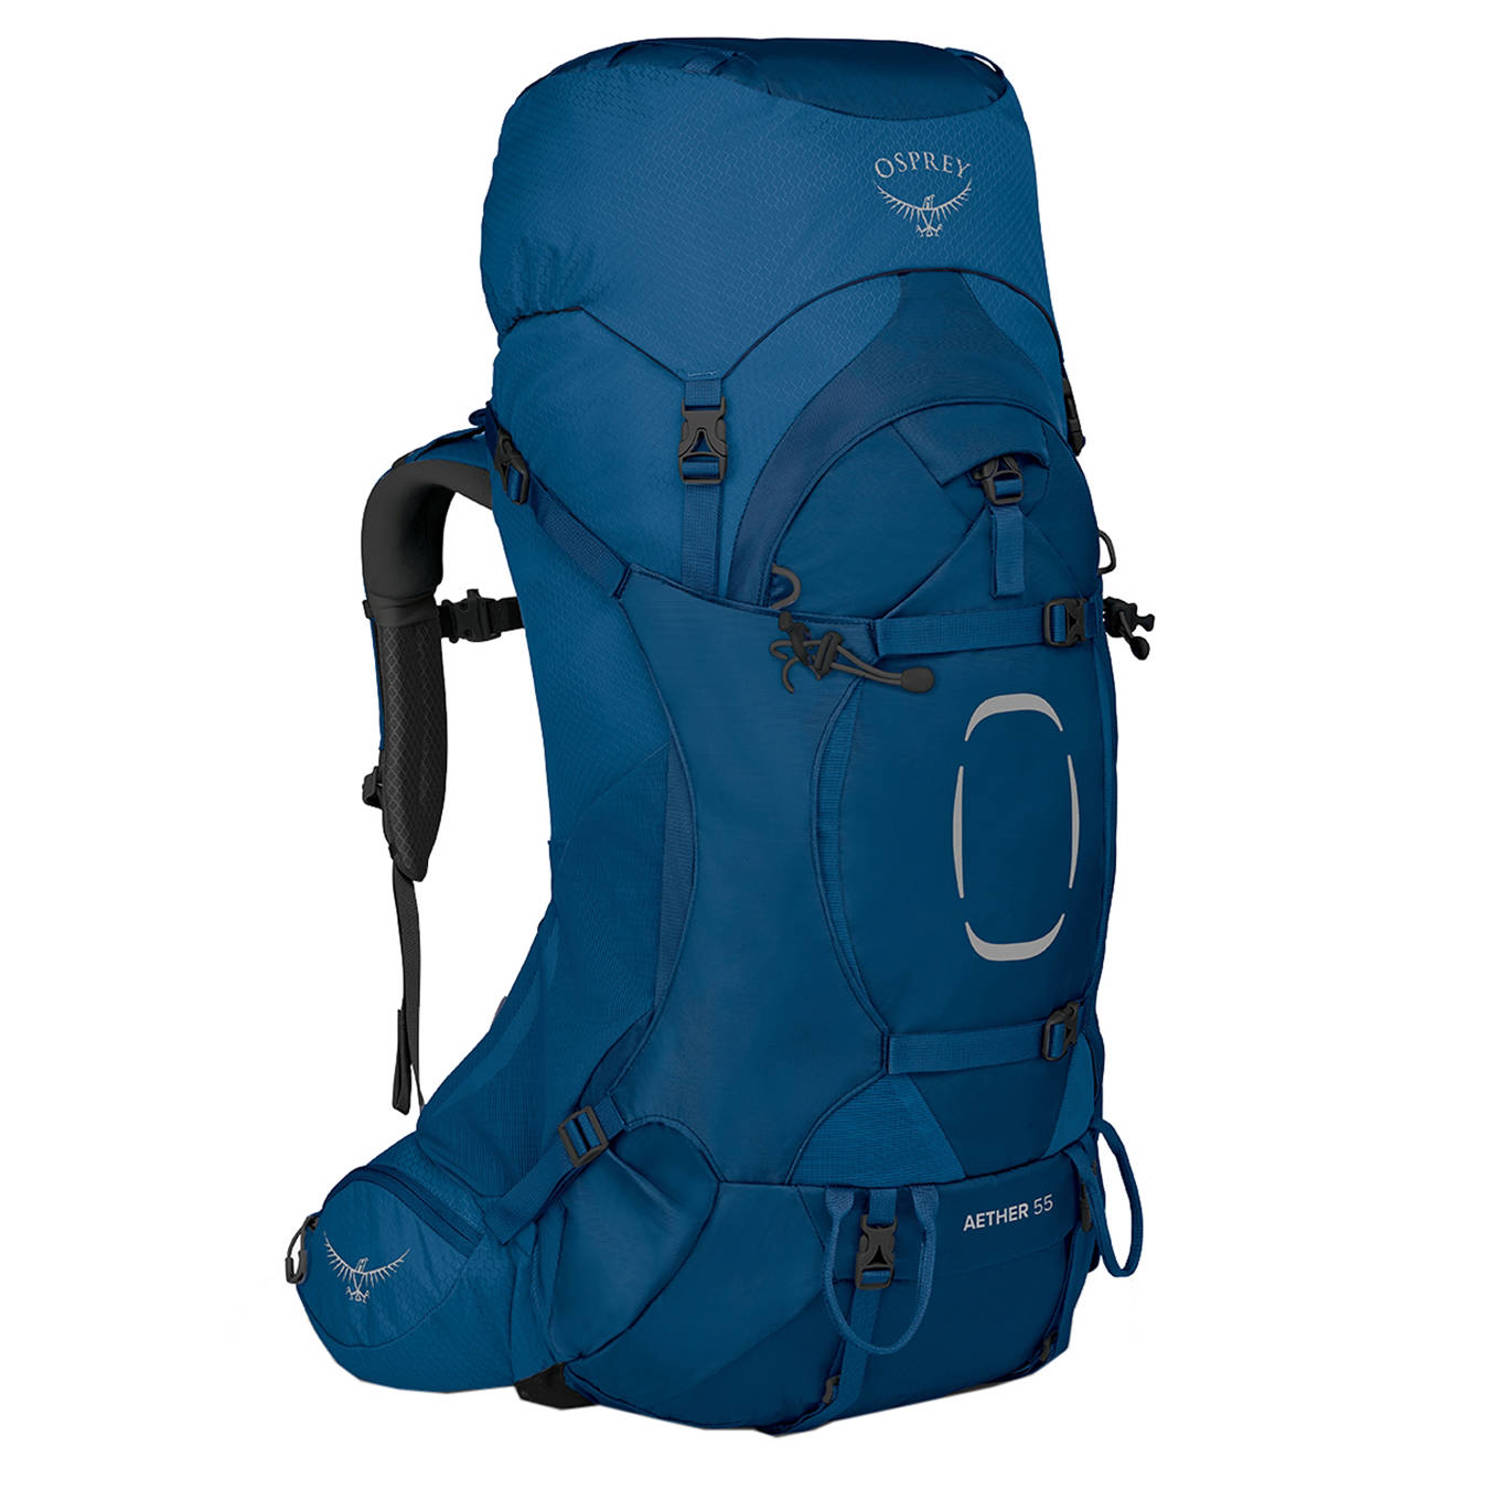 Osprey backpack Aether 55 L XL blauw